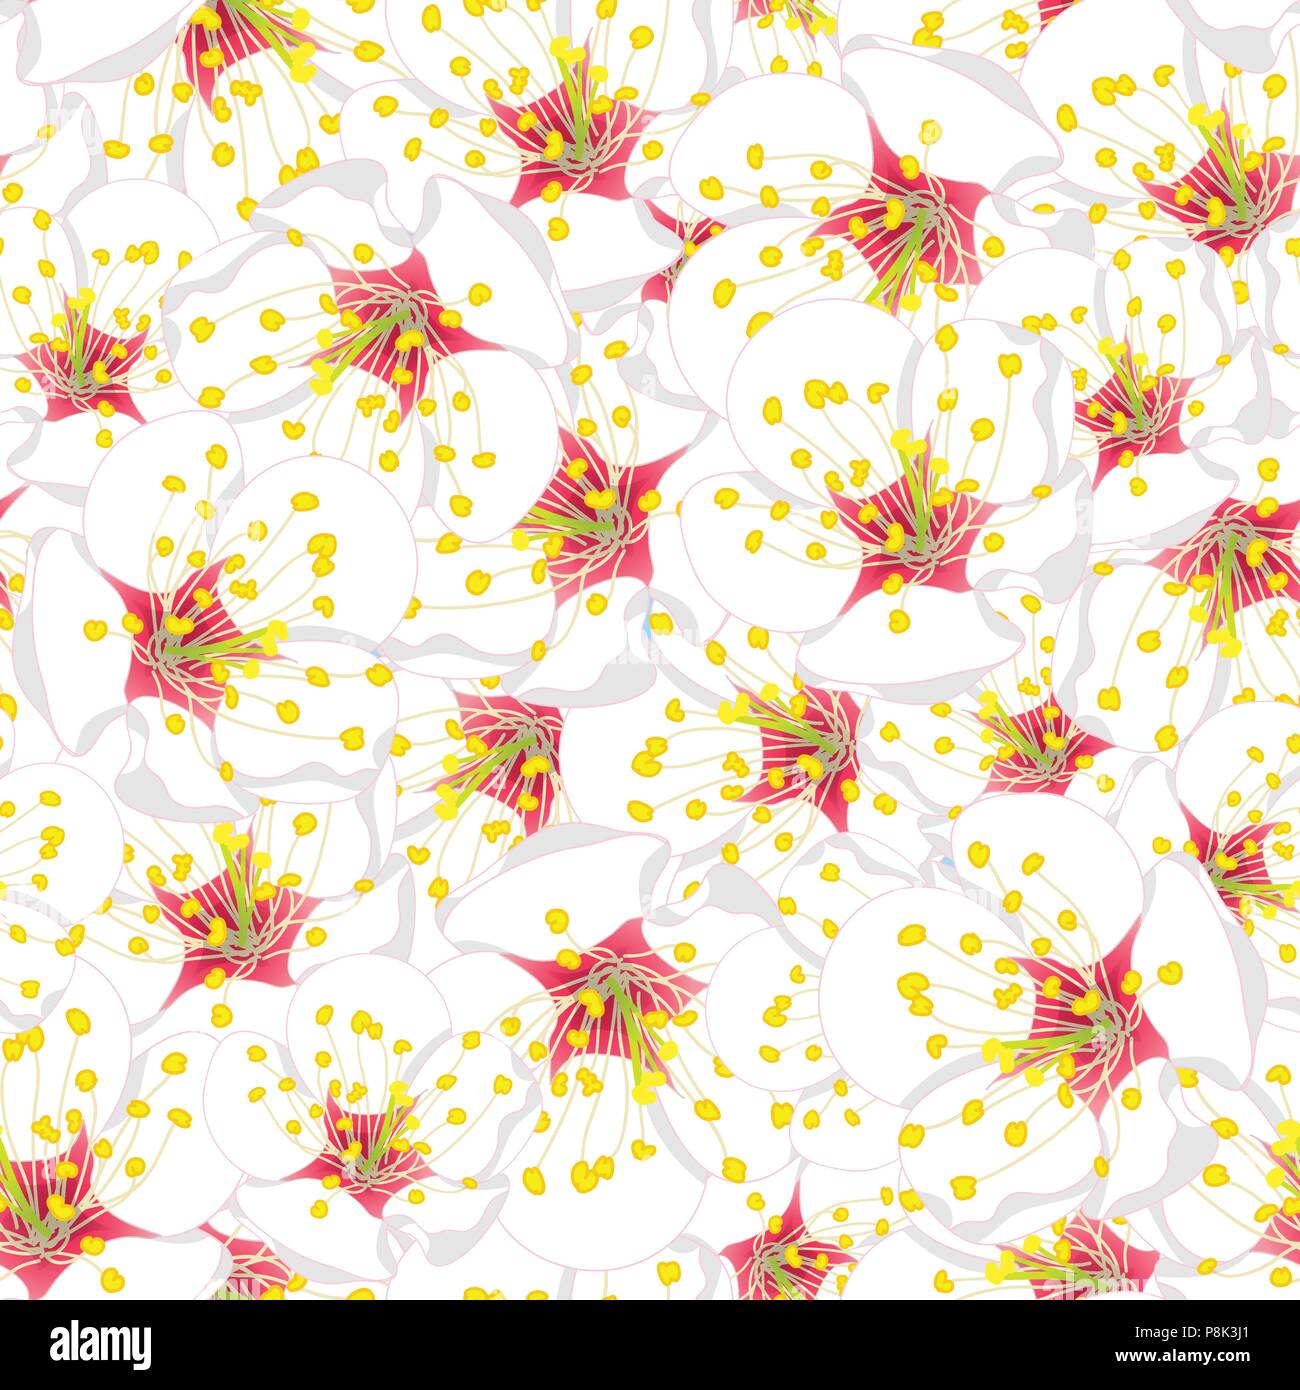 White Plum Blossom Flower Seamless Background. Vector Illustration. Stock Vector